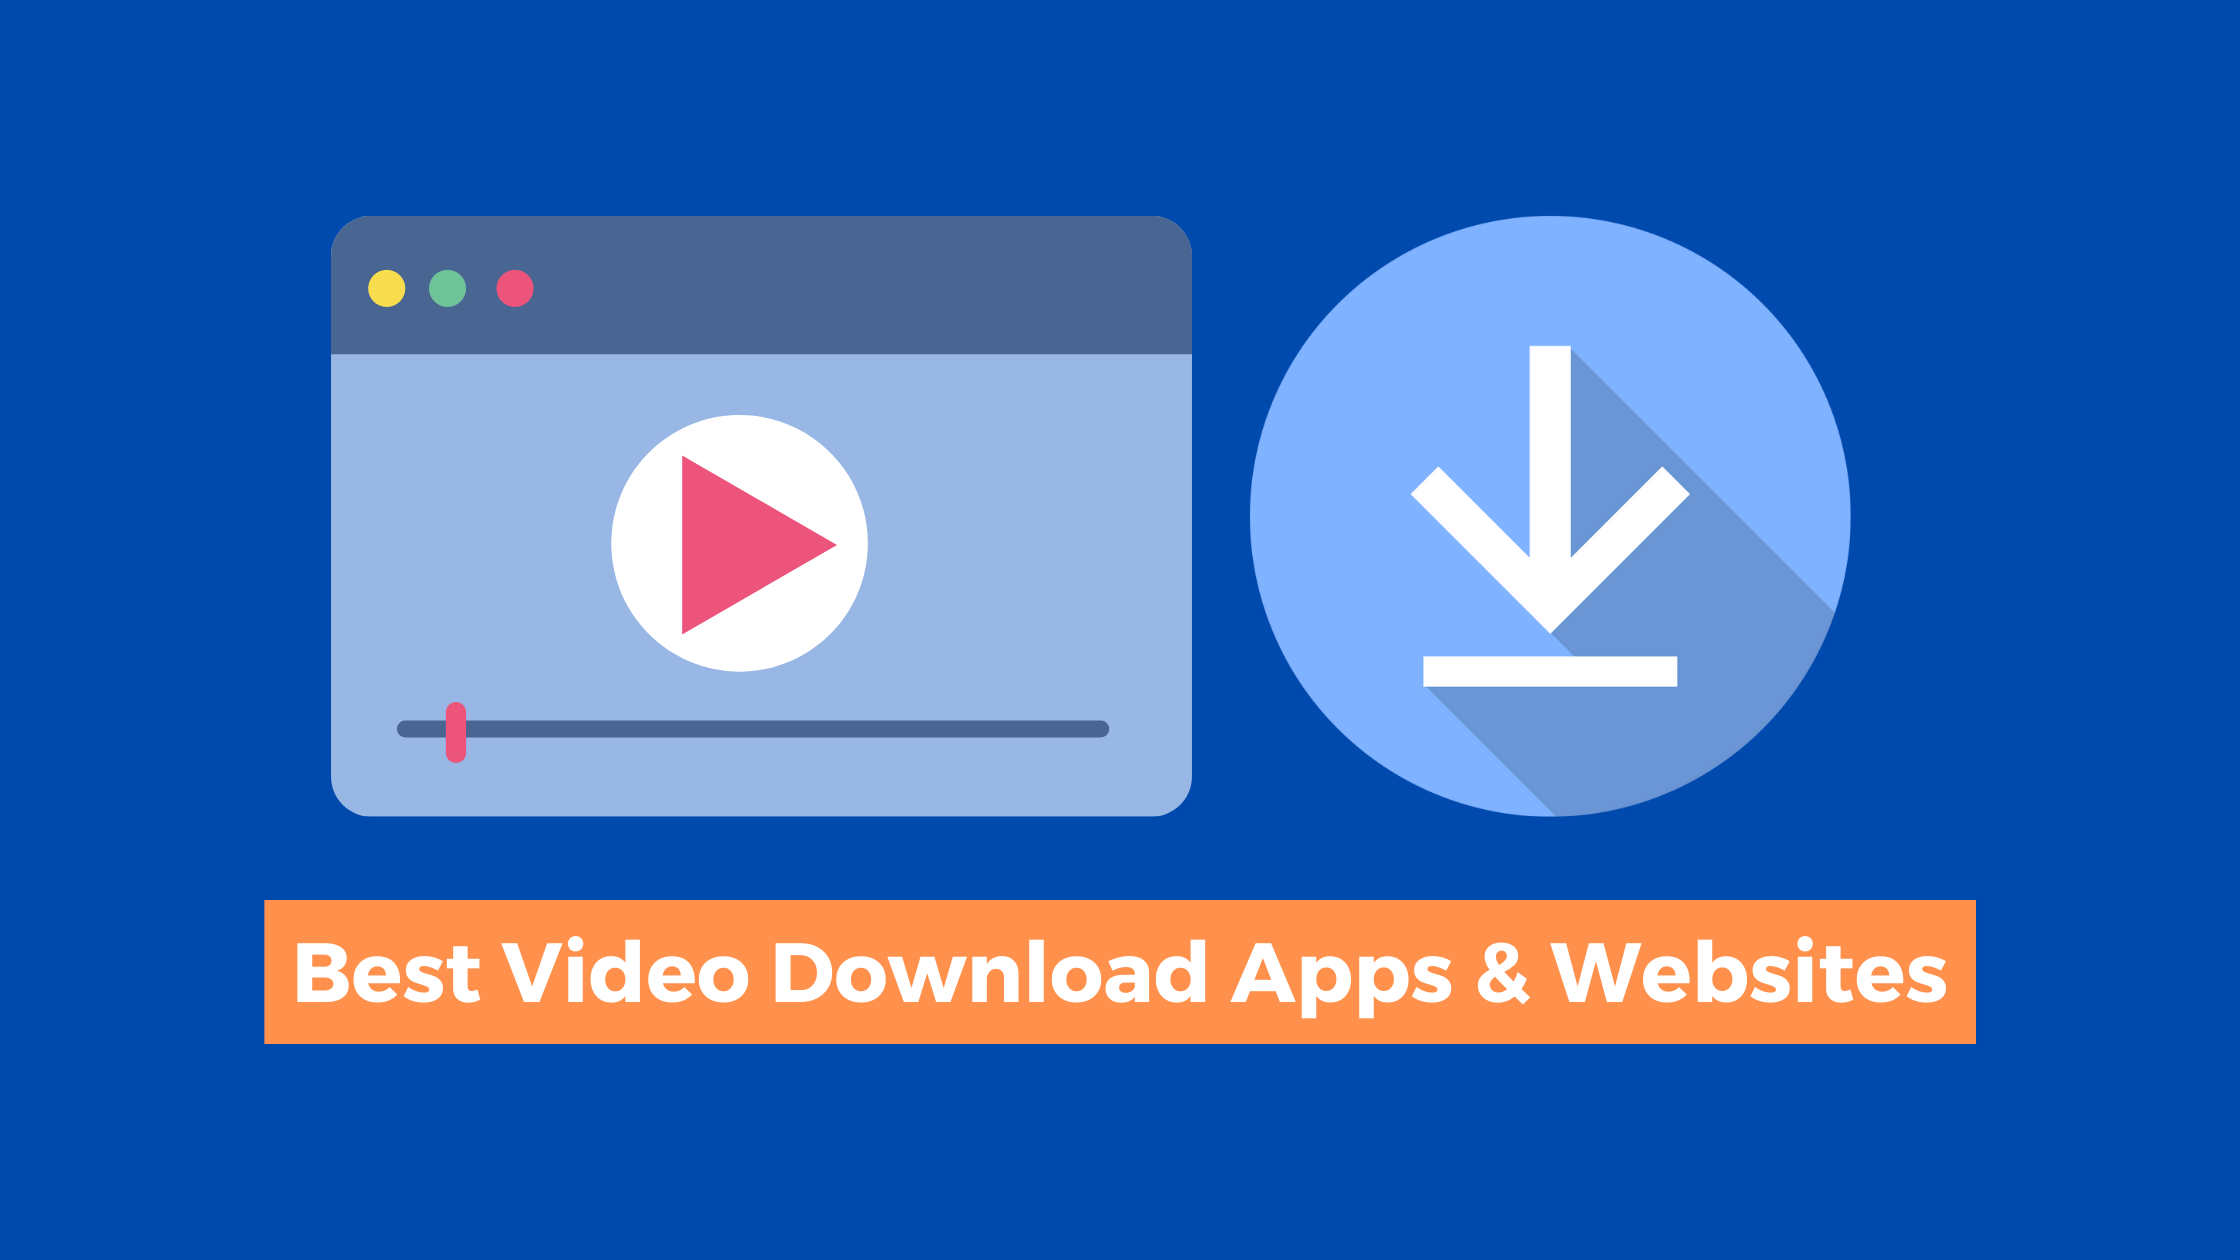 Best Video Download Apps & Websites